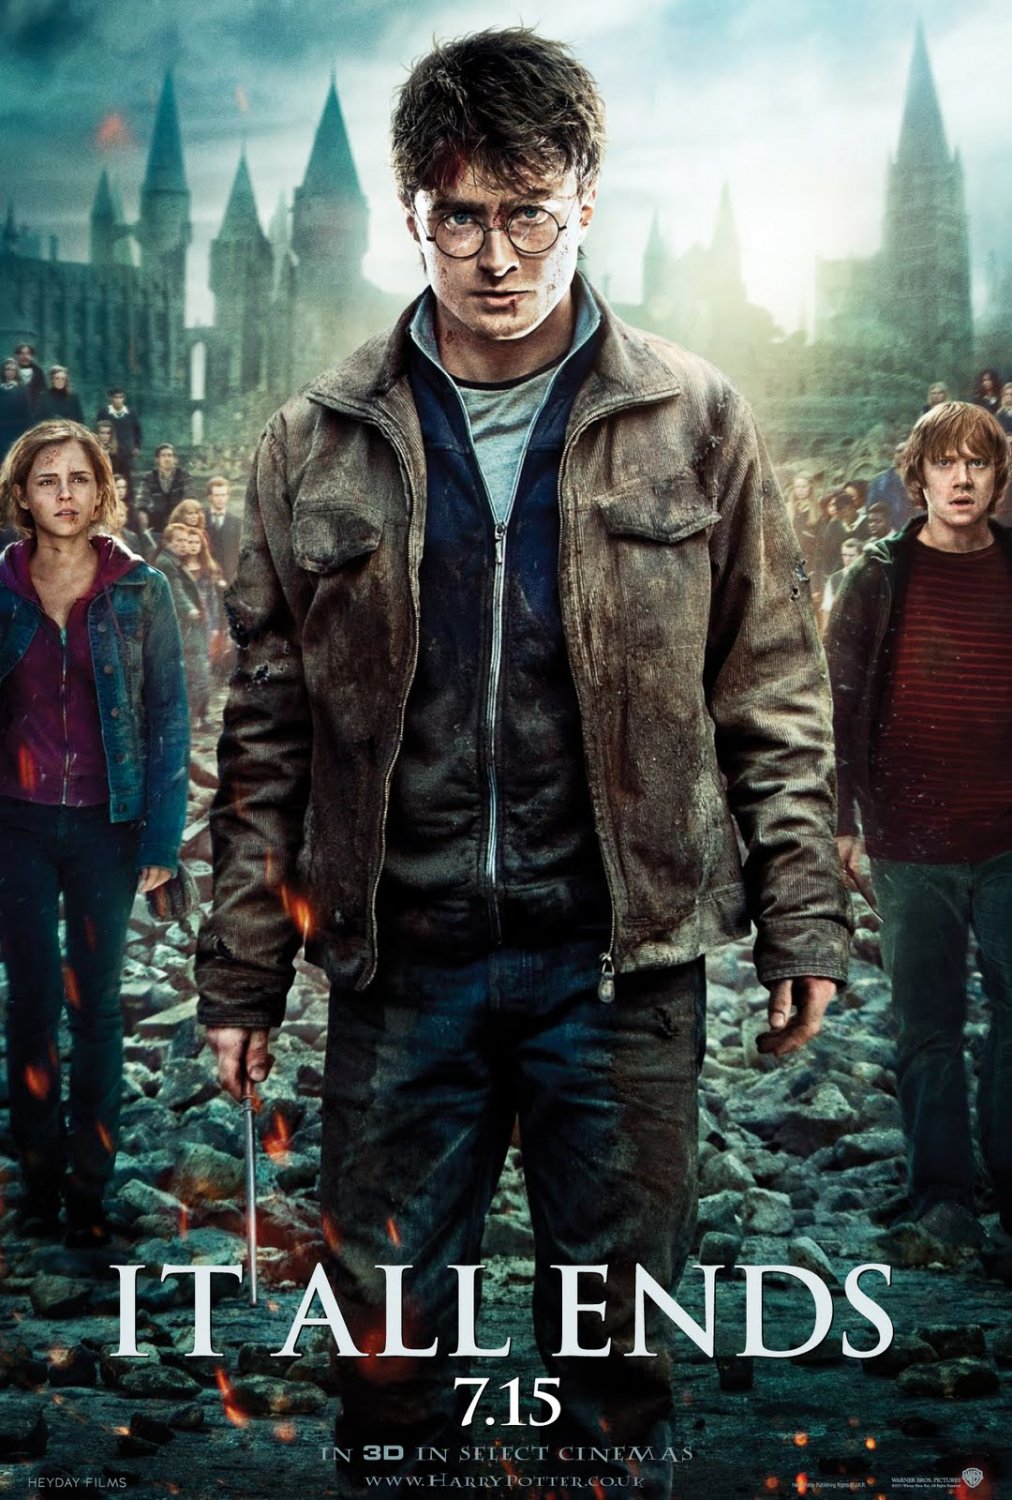  Harry Potter ve Ölüm Yadigârlari: Bölüm 2 | Efsanenin Sonu | 13 Temmuz 2011